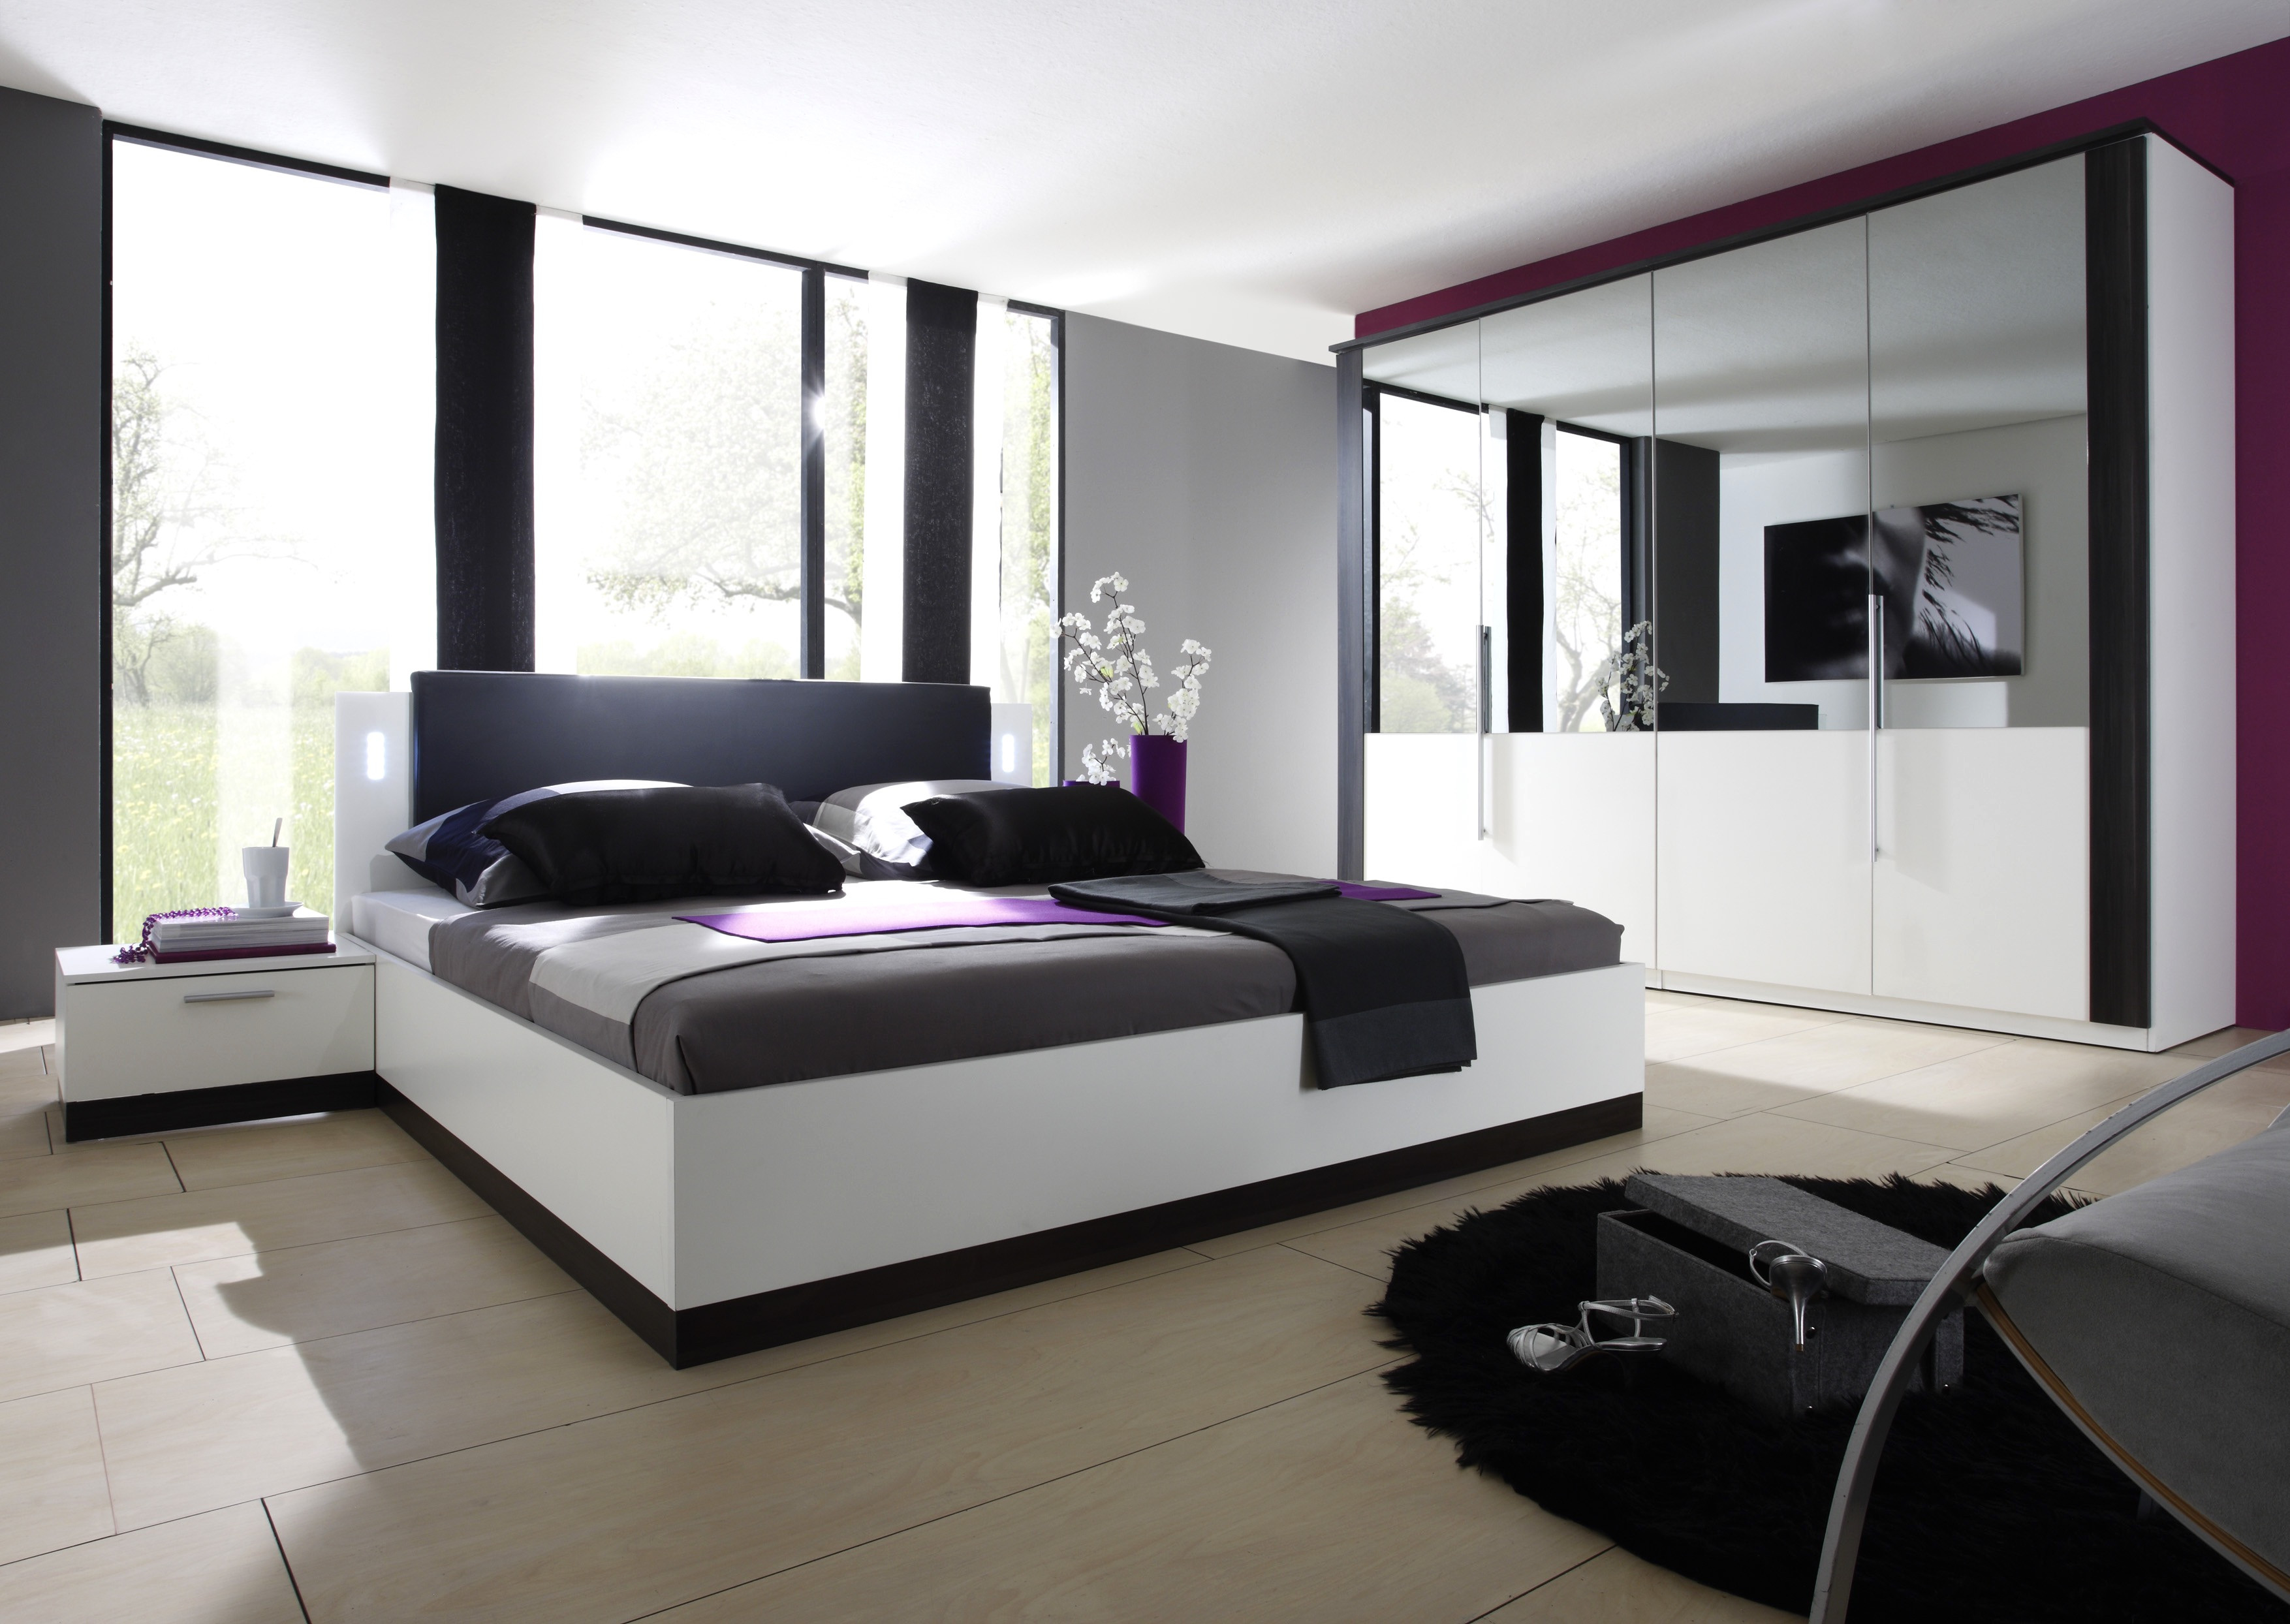 Komplett Schlafzimmer
 schlafzimmer komplett kaufen – Deutsche Dekor 2018